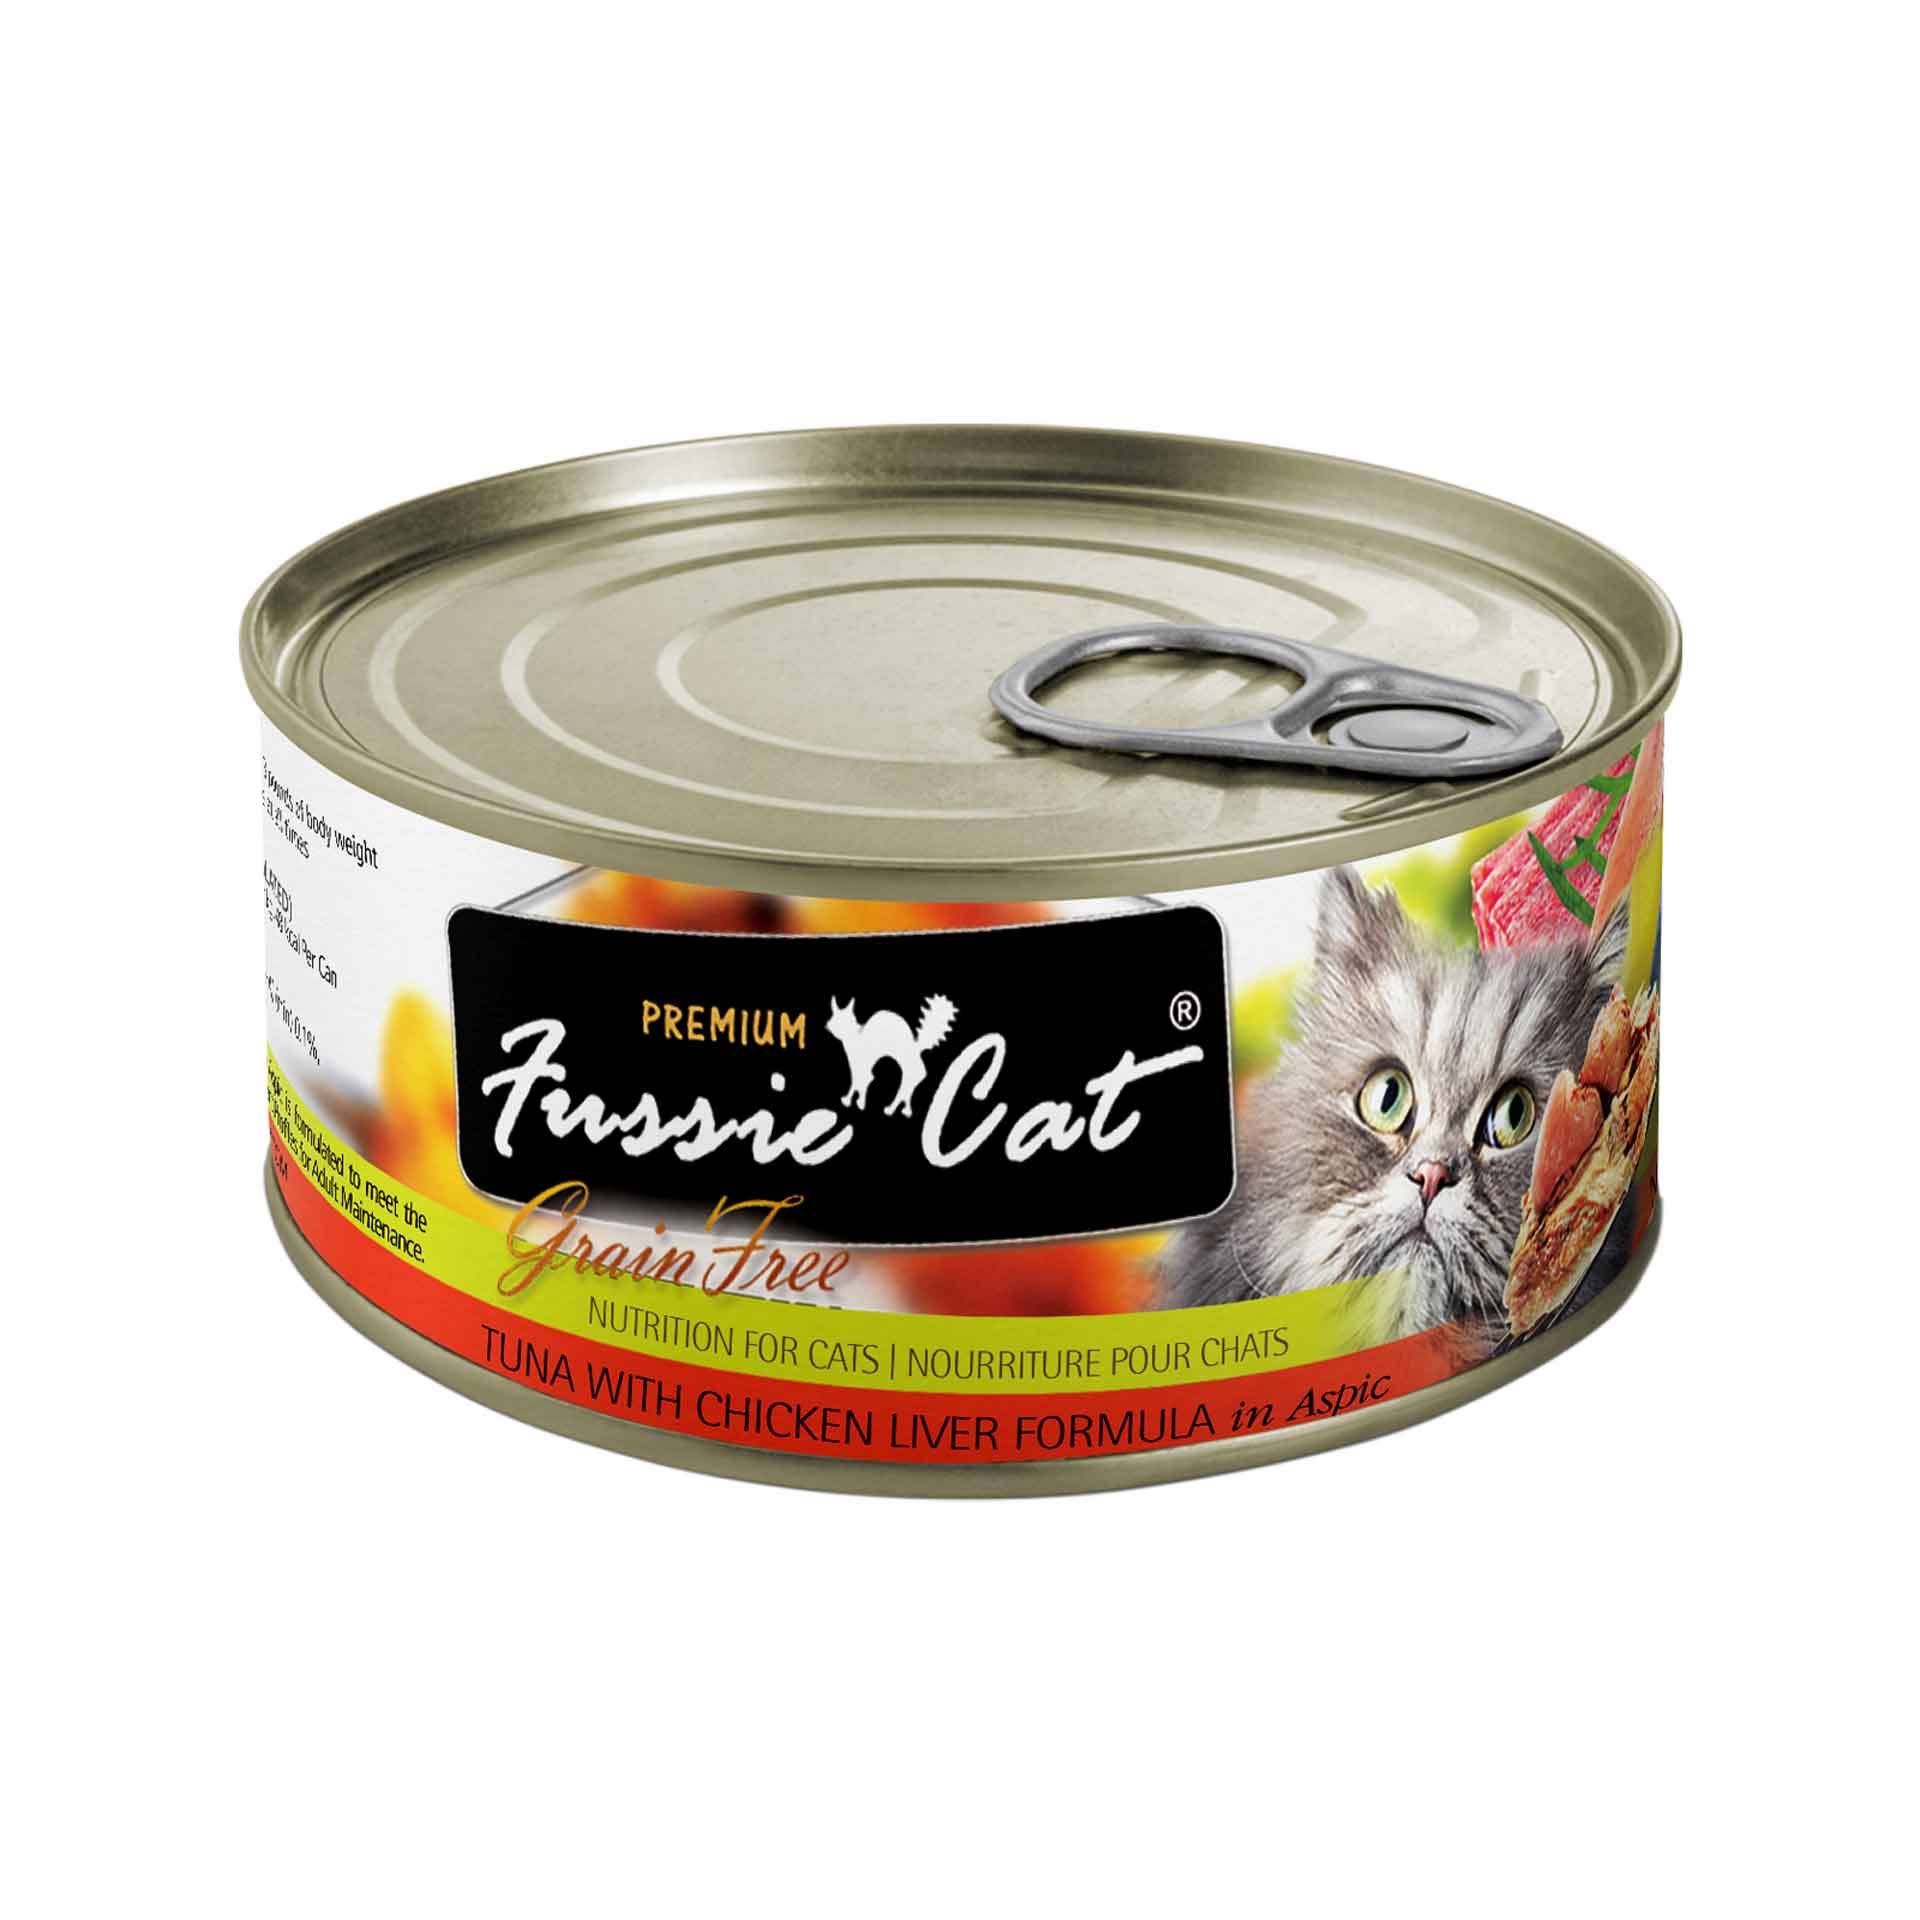 Fussie Cat Premium Tuna with Chicken Liver